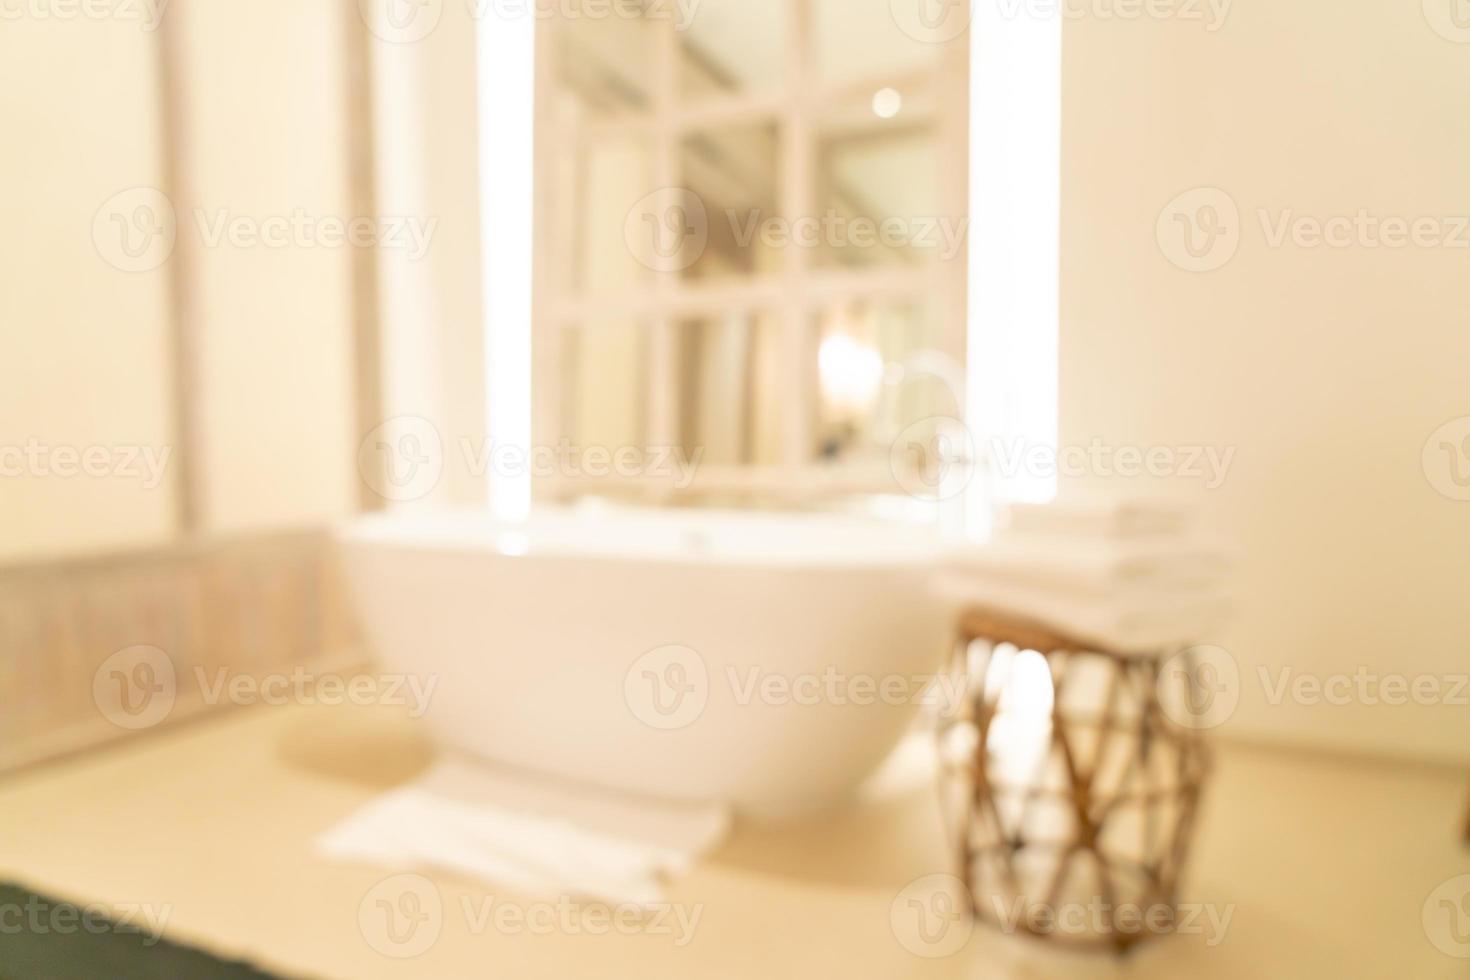 abstrakt suddighet lyxigt badrum i hotellsemesterort för bakgrund foto